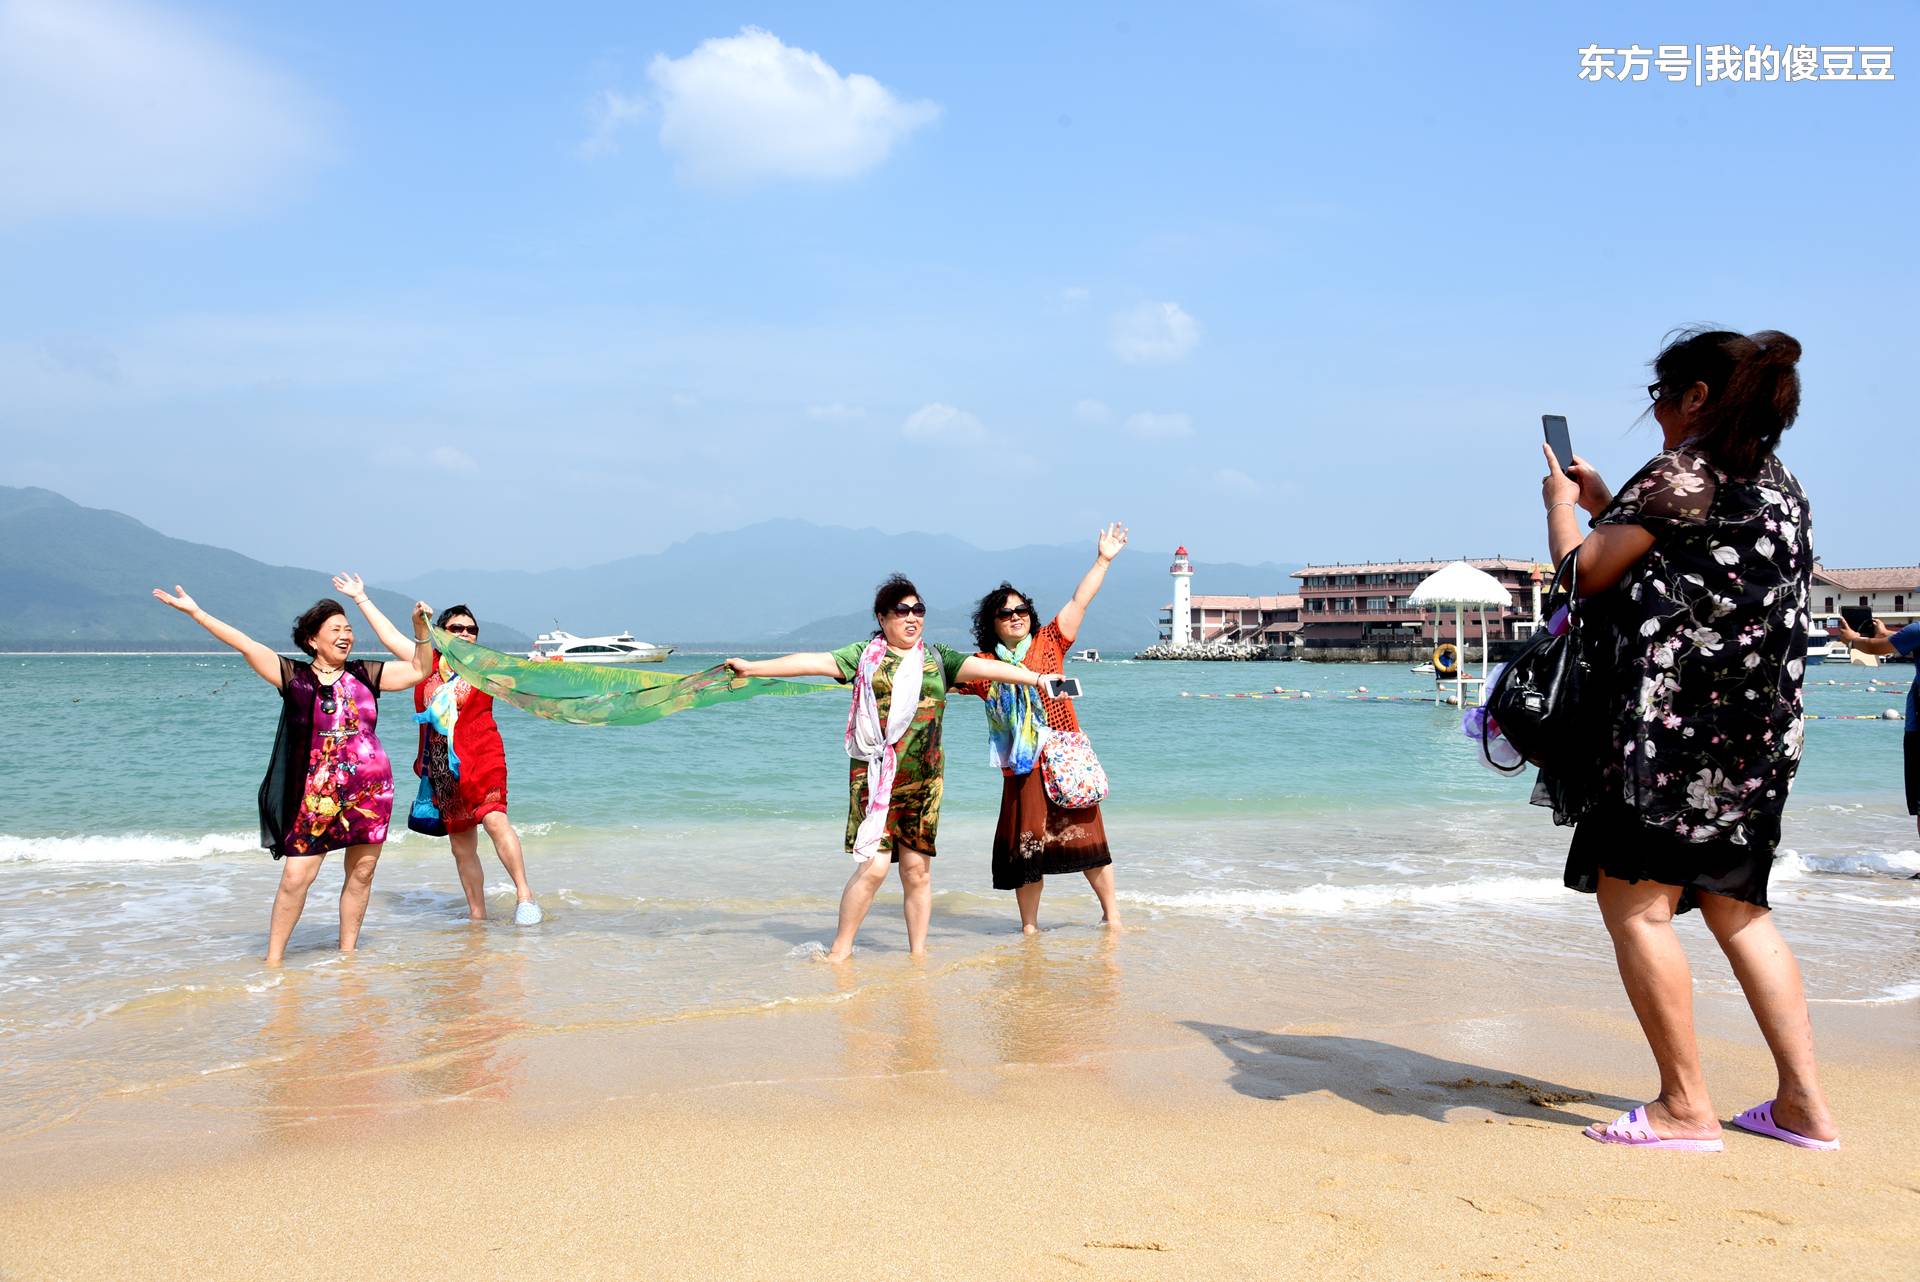 游客在海滩拍照爱用丝巾 阿姨为摆姿势全身湿透(4) 第4页